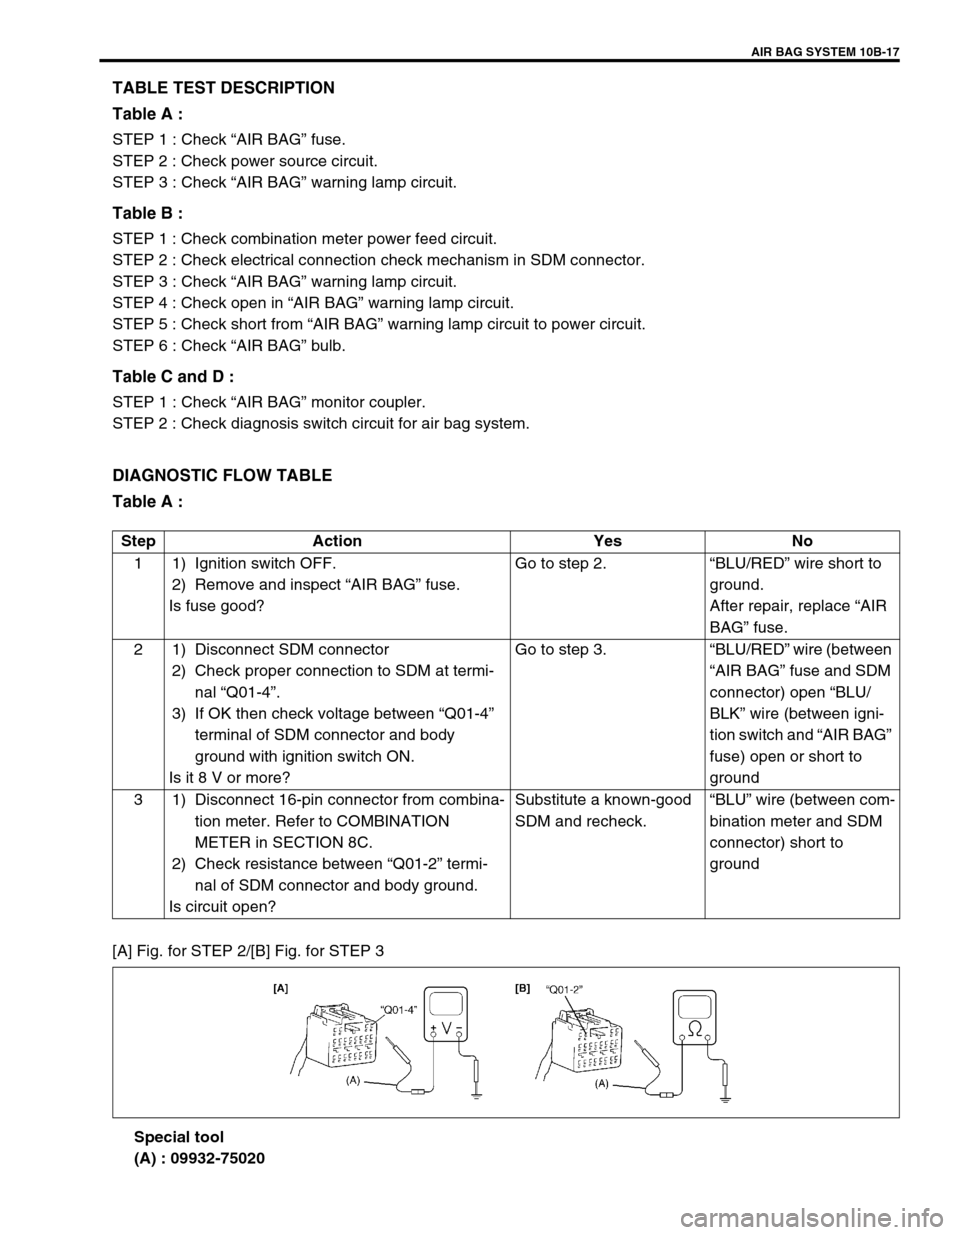 SUZUKI GRAND VITARA 2001 2.G Owners Manual AIR BAG SYSTEM 10B-17
TABLE TEST DESCRIPTION
Table A :
STEP 1 : Check “AIR BAG” fuse.
STEP 2 : Check power source circuit.
STEP 3 : Check “AIR BAG” warning lamp circuit.
Table B :
STEP 1 : Che